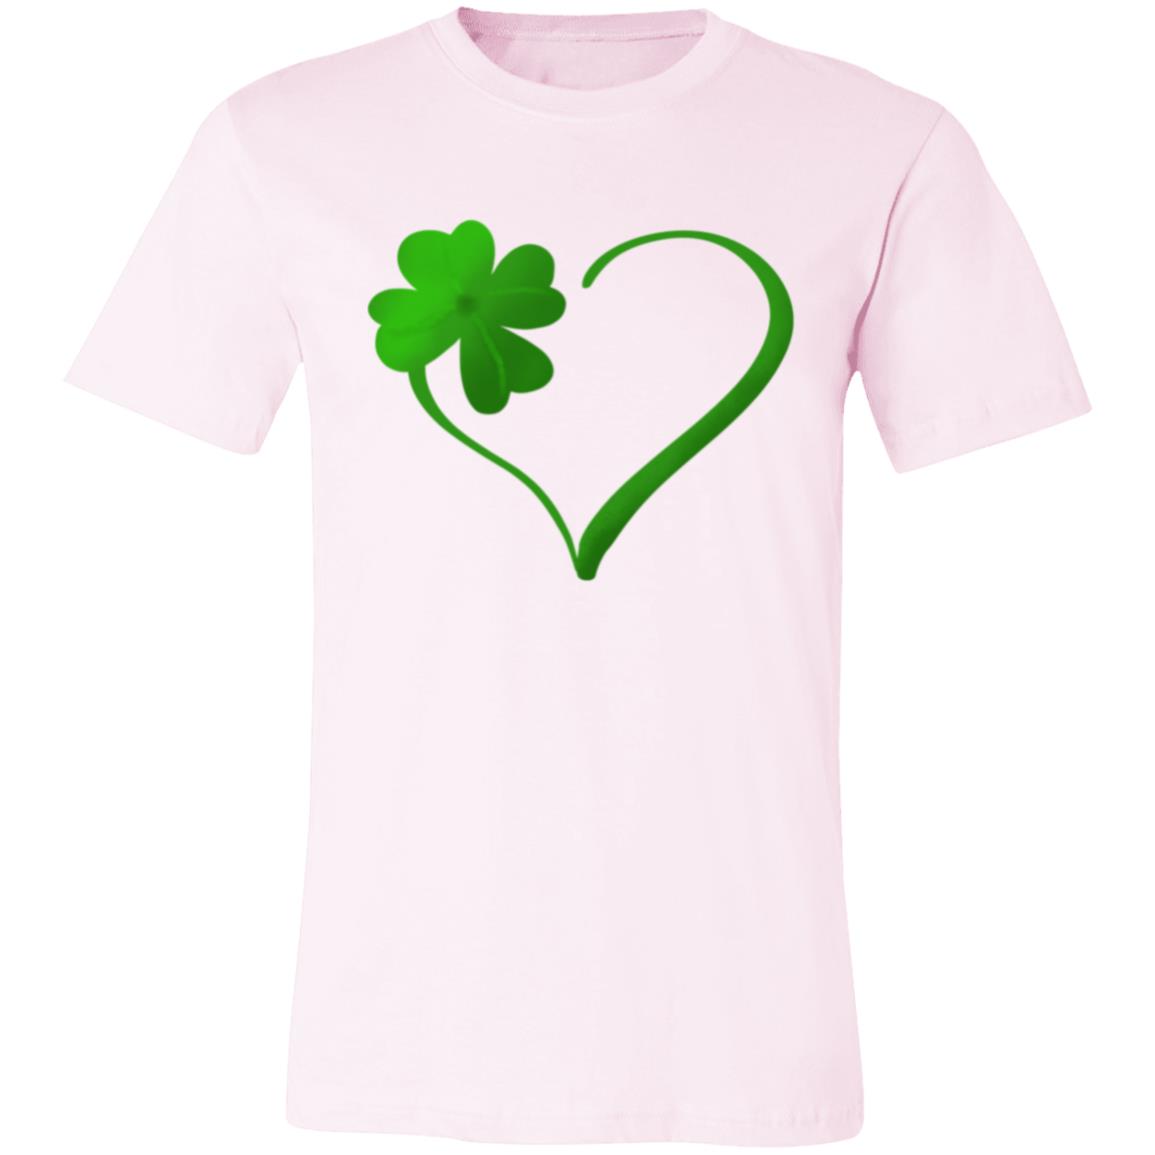 Clover Heart -- Unisex Jersey Short-Sleeve T-Shirt